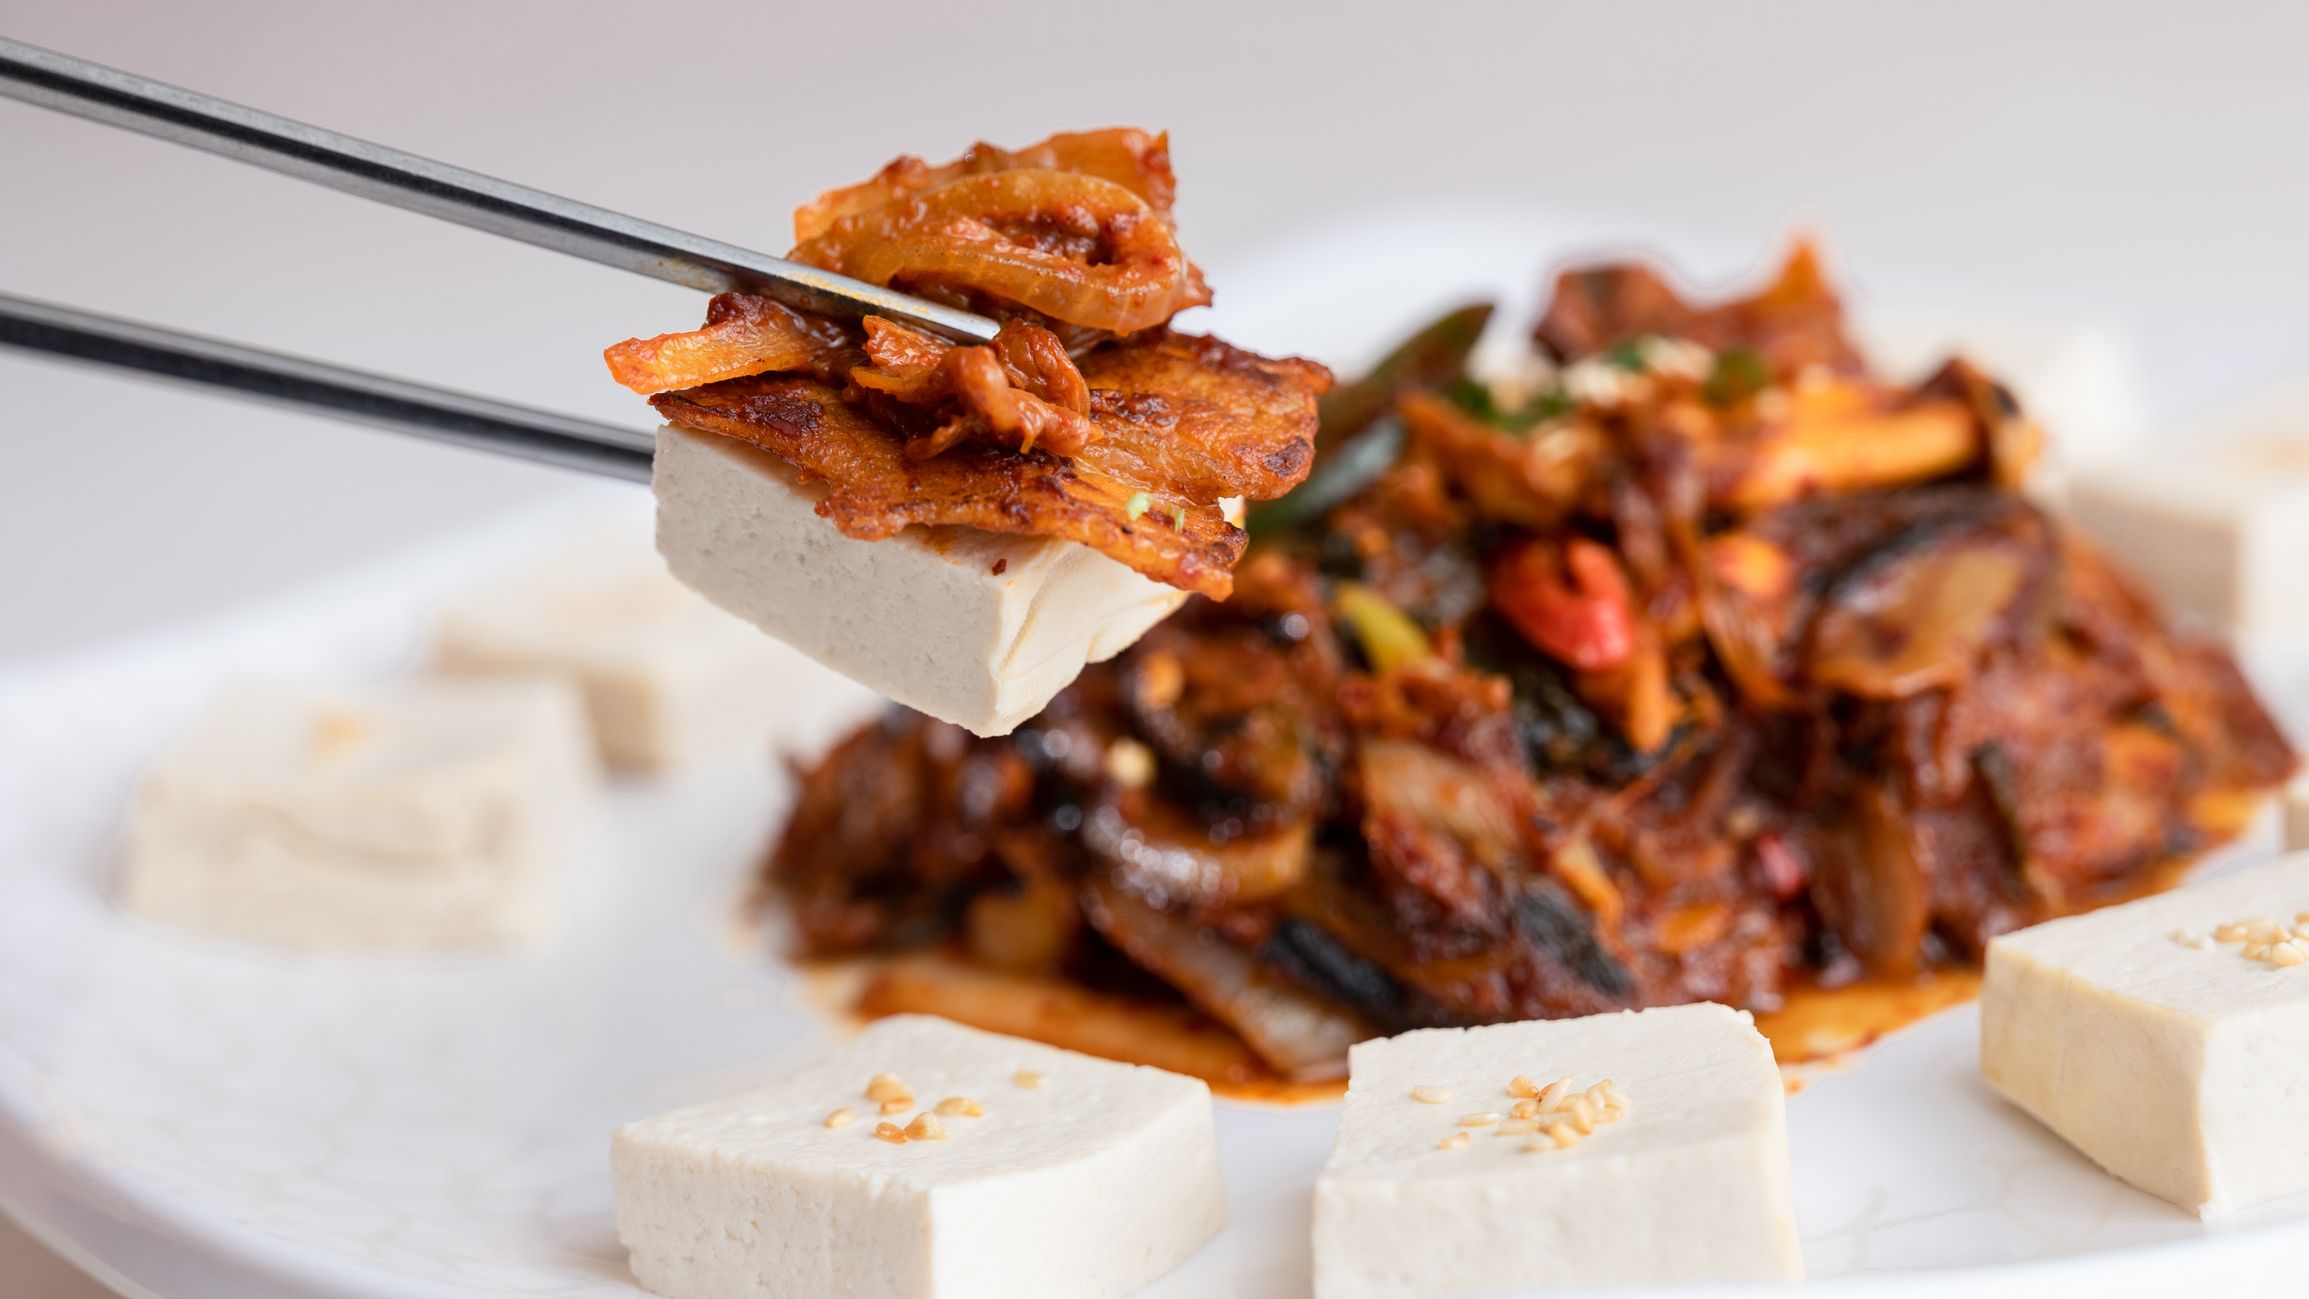 ¿Quieres aprender a hacer tofu casero? Te lo mostramos paso a paso